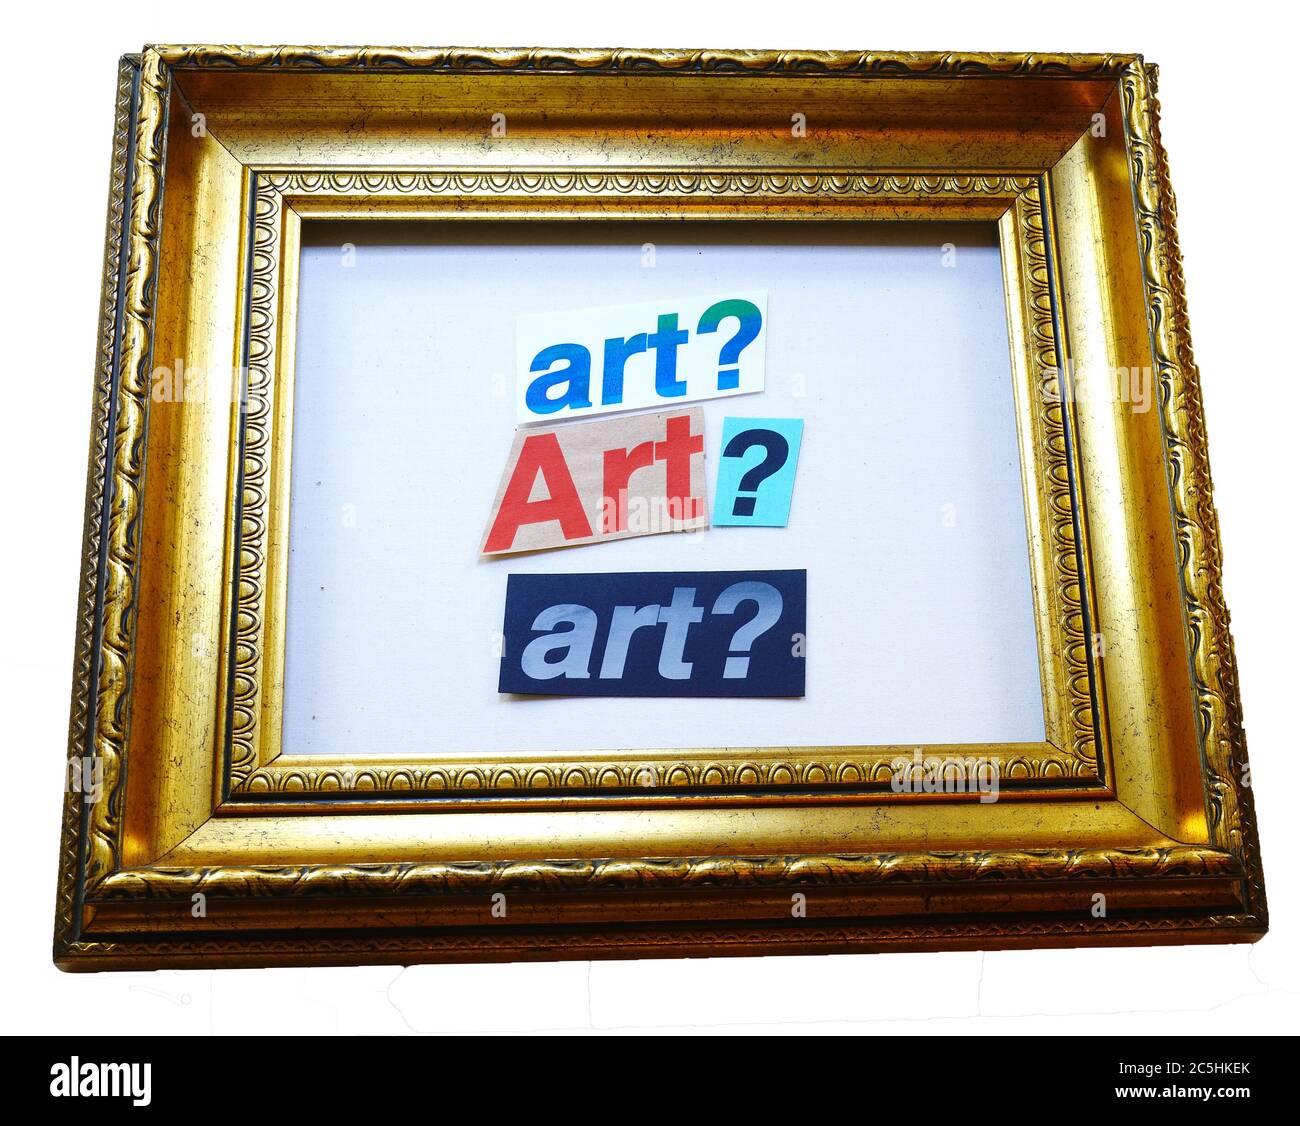 Foto conceptual preguntando qué es arte, cortado de texto serigrafiado en un marco dorado aislado sobre fondo blanco Foto de stock